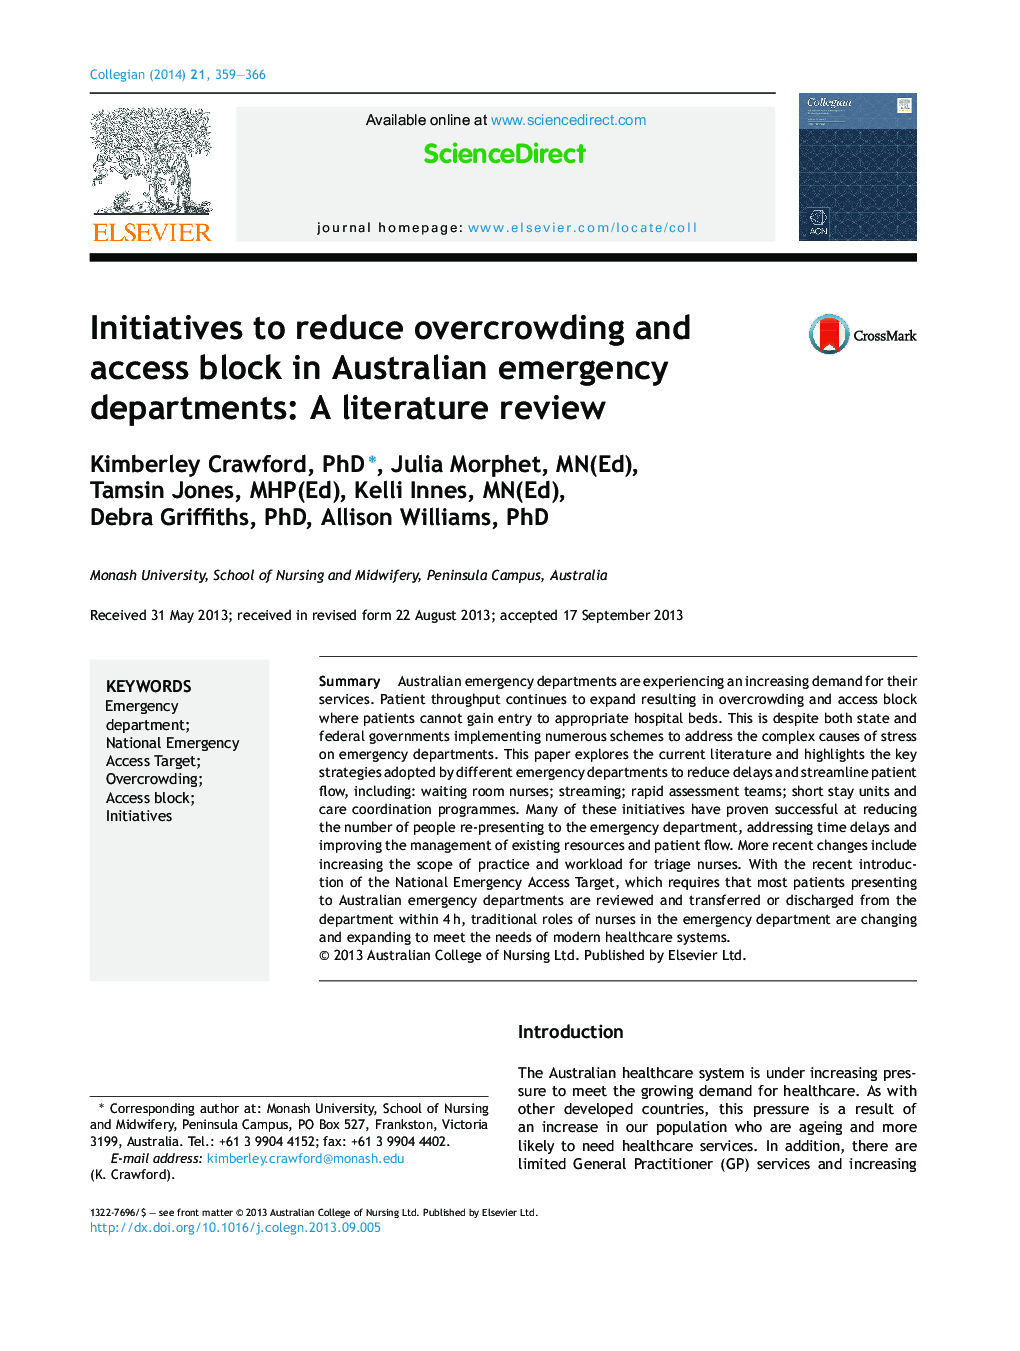 ابتکارات برای کاهش ازدحام بیش از حد و جلوگیری از دسترسی در بخش اورژانس استرالیا: مروری بر مقالات